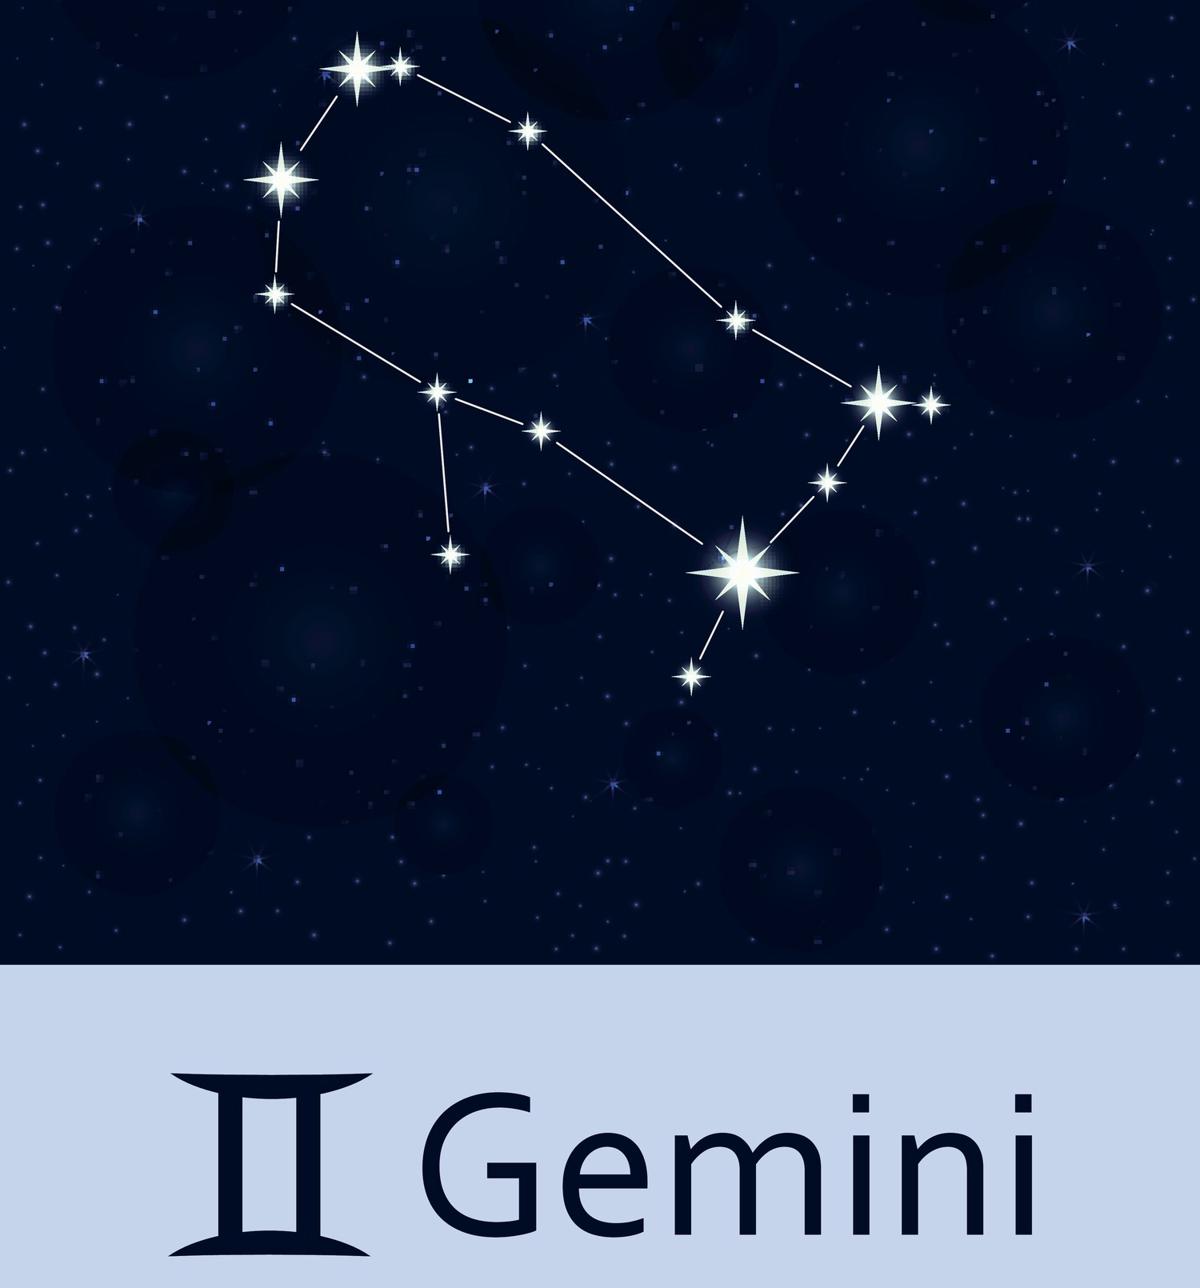 gemini sign images